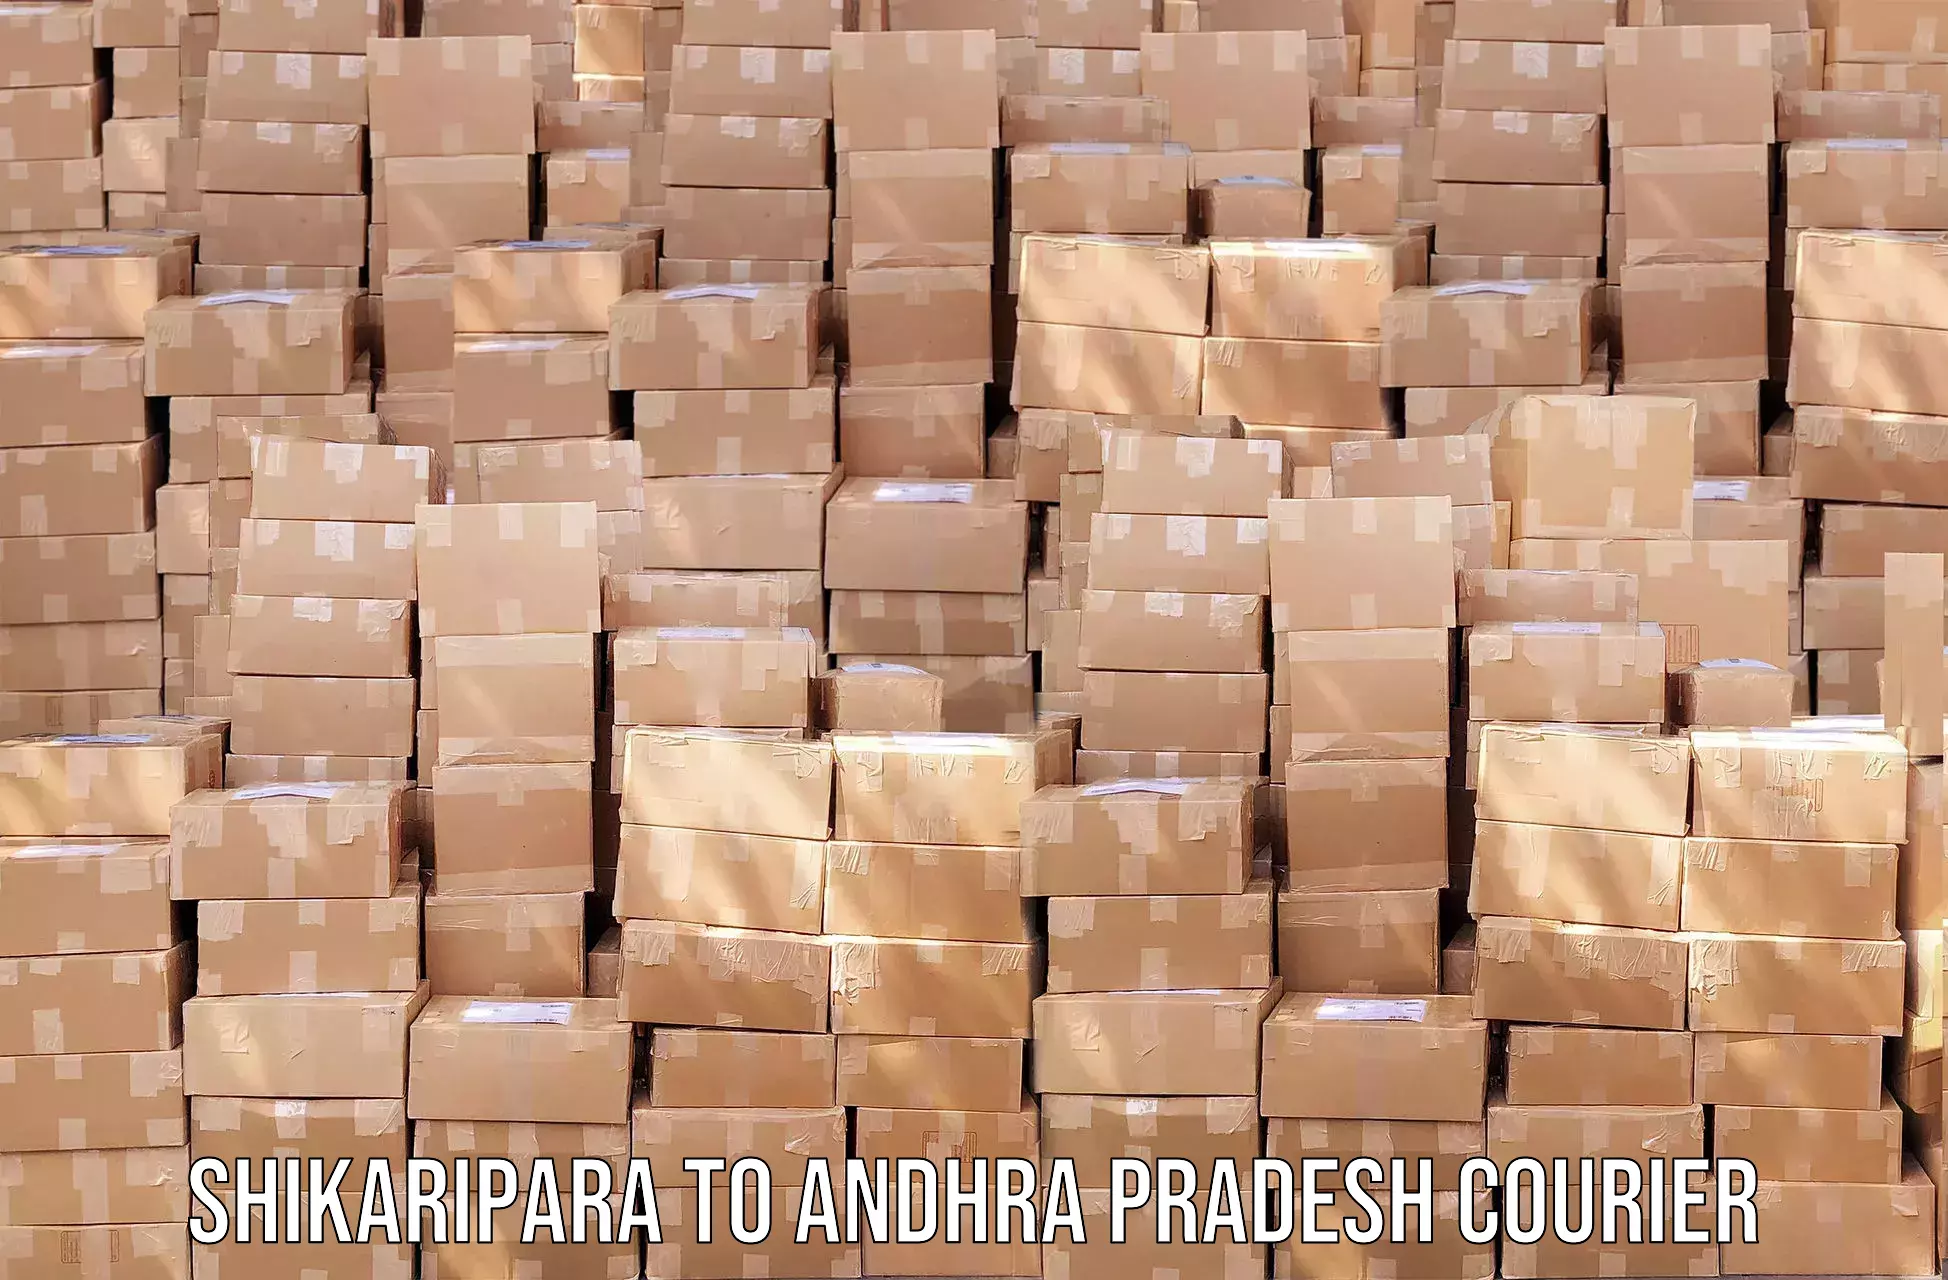 Express delivery capabilities Shikaripara to Andhra Pradesh